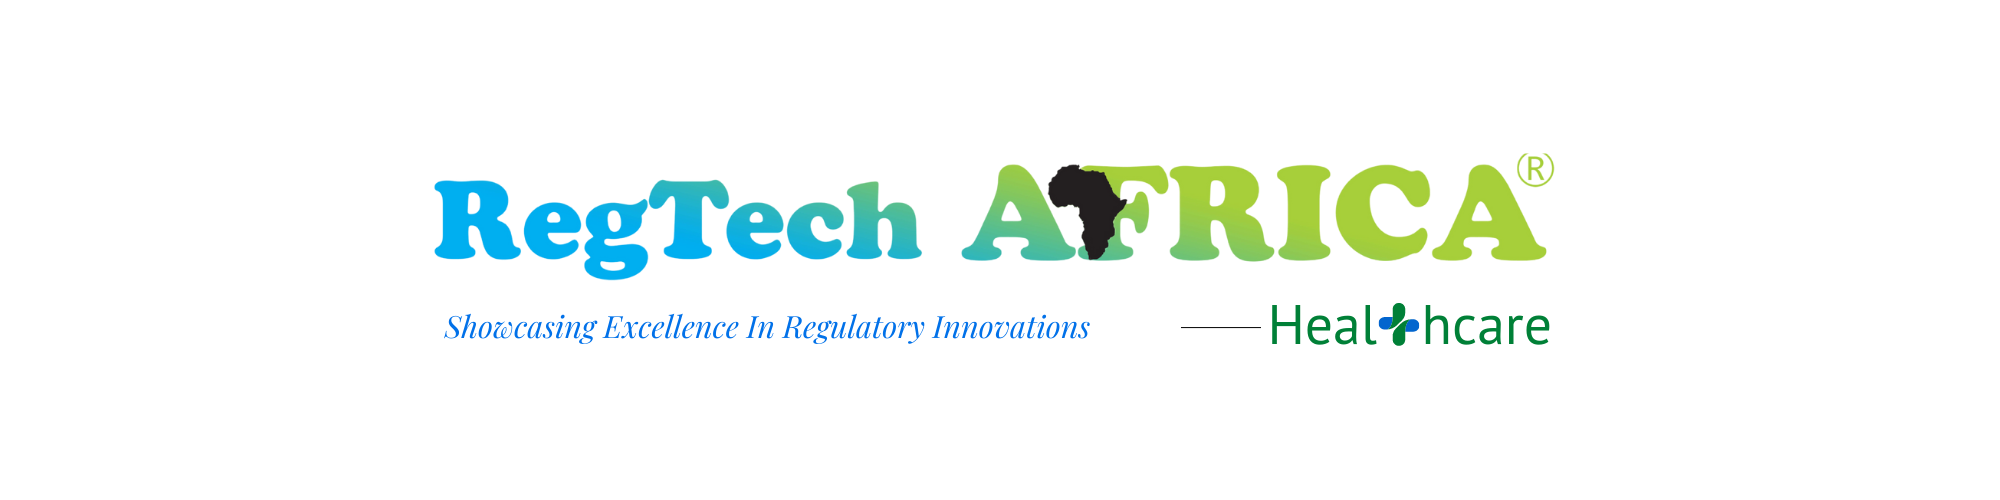 Regtech Africa healthcare